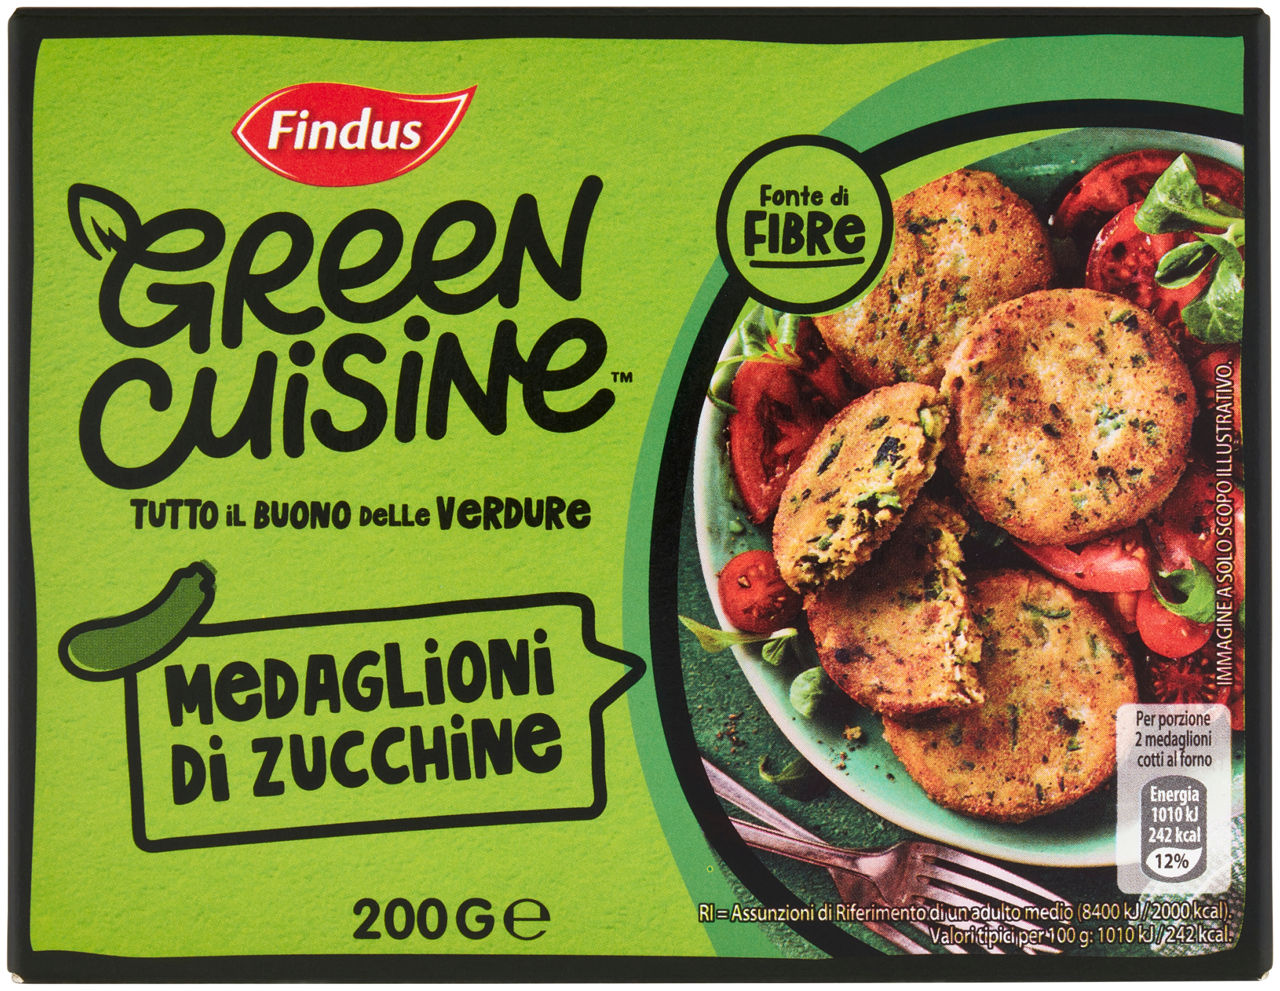 Medaglioni di zucchine findus green cuisine cartone g 200